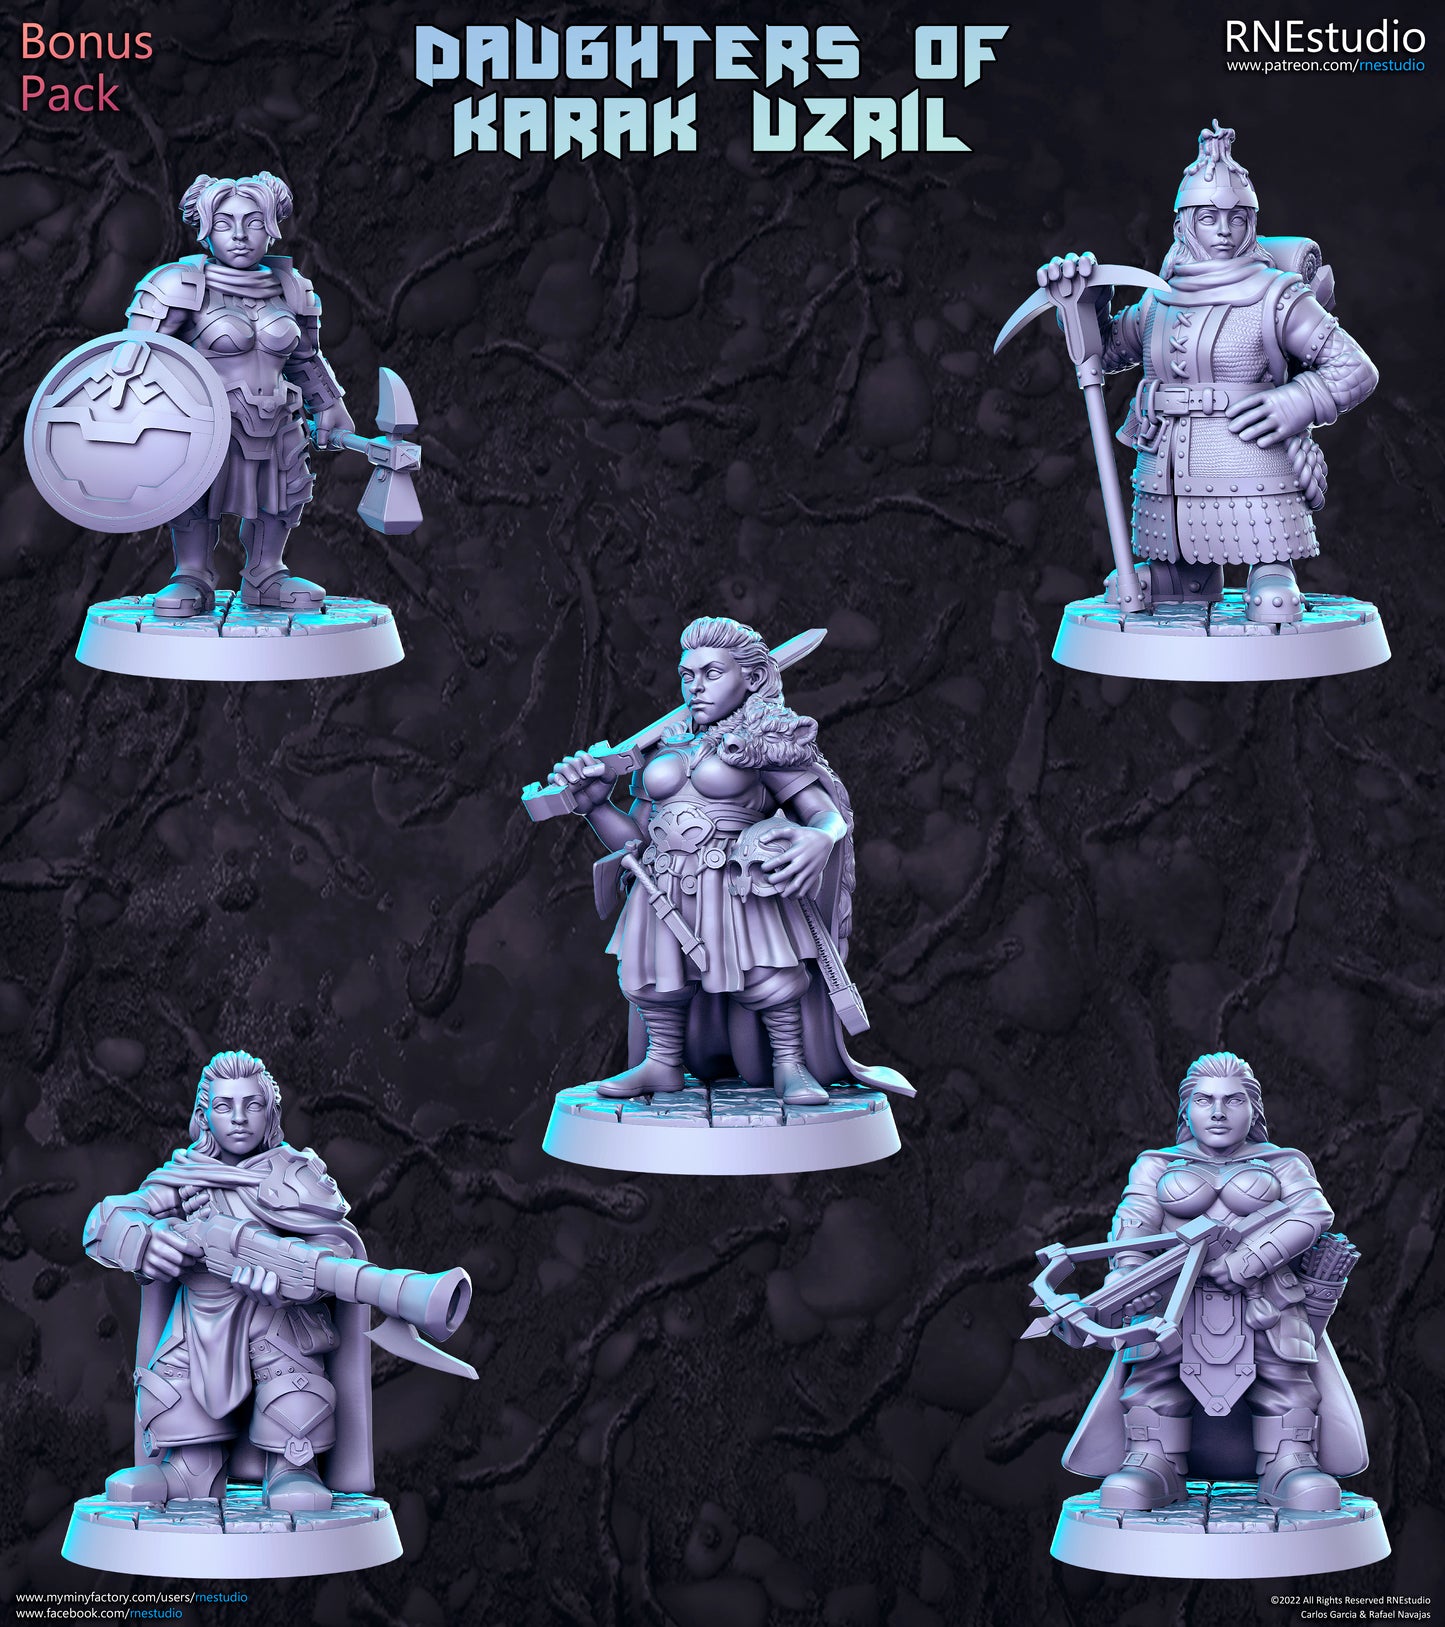 DAUGHTERS OF KARAK UZRIL